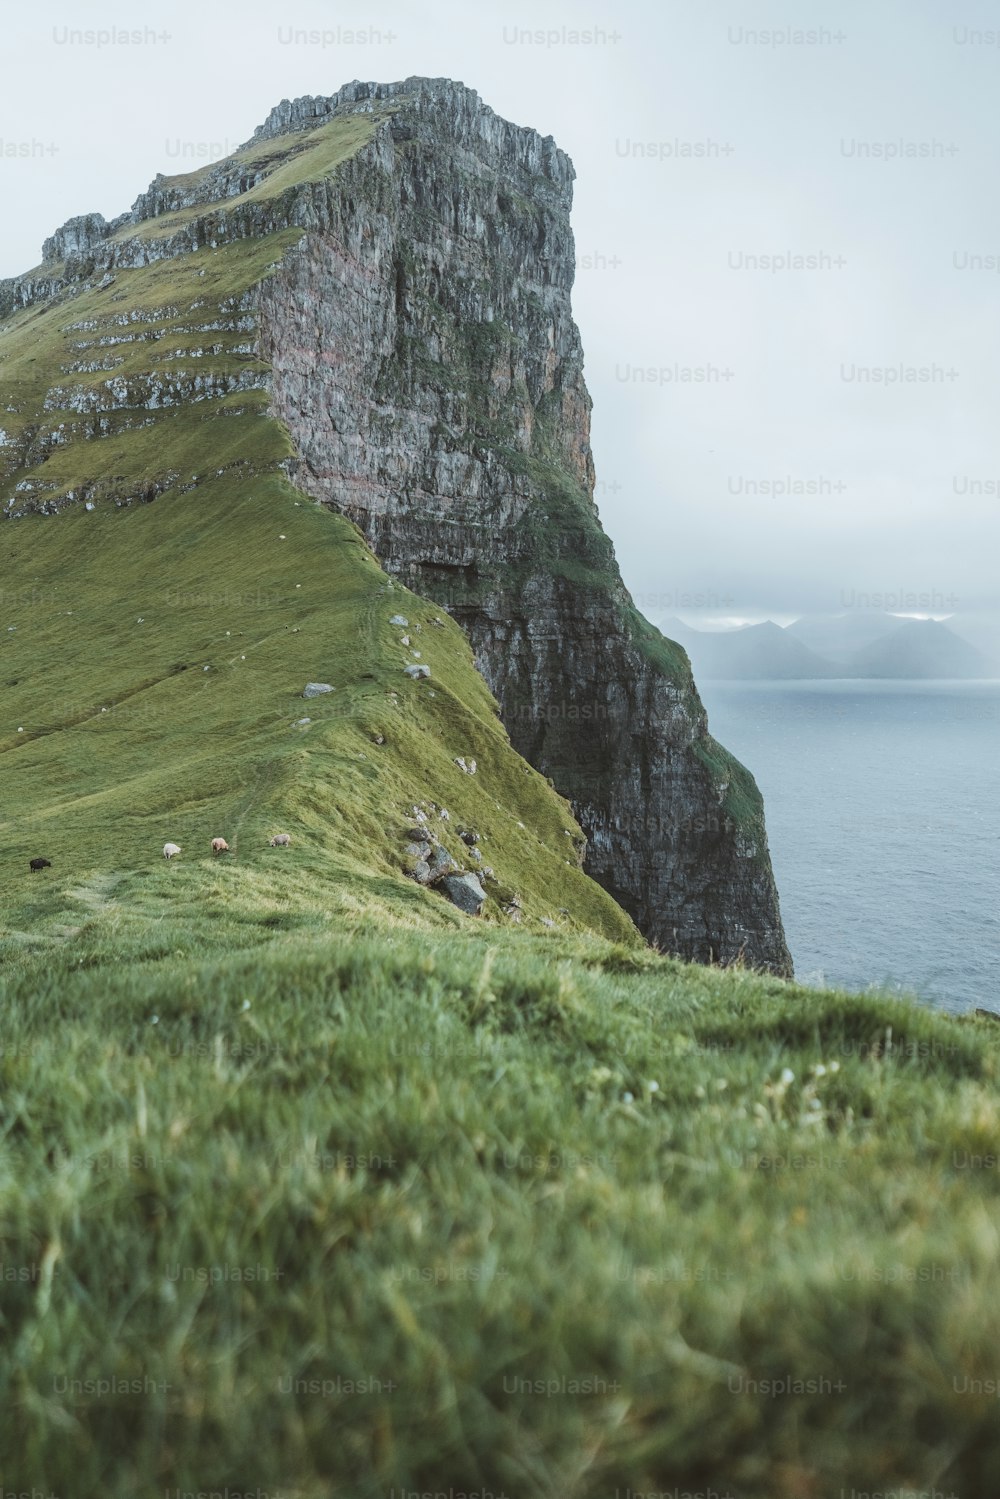 Eine Gruppe von Schafen, die auf einem üppig grünen Hügel stehen